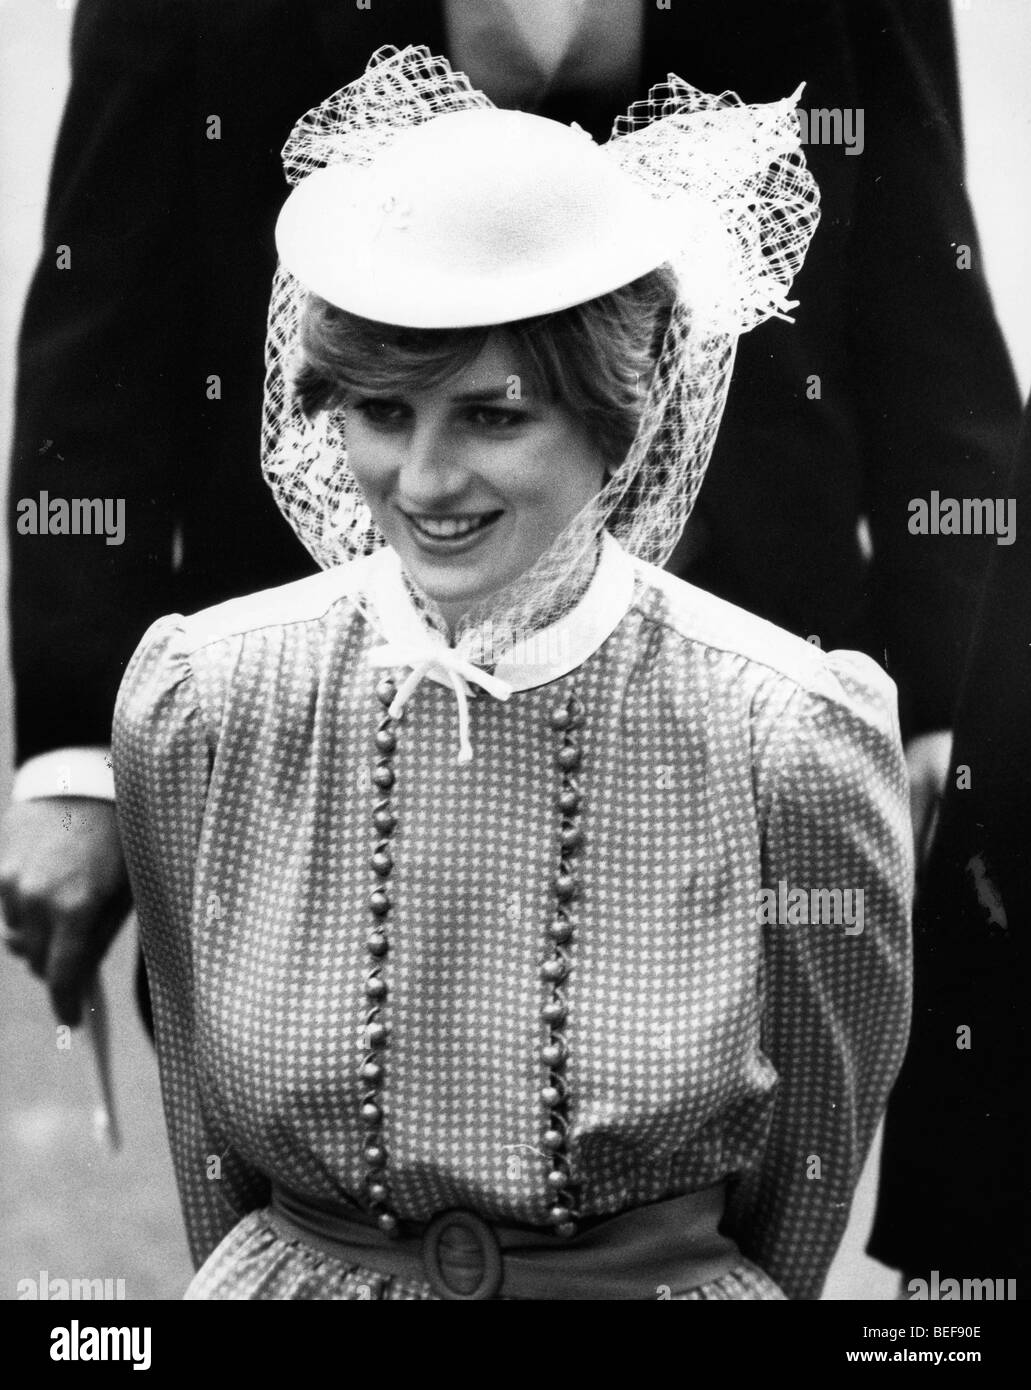 Princess Diana at Royal Ascot Stock Photo